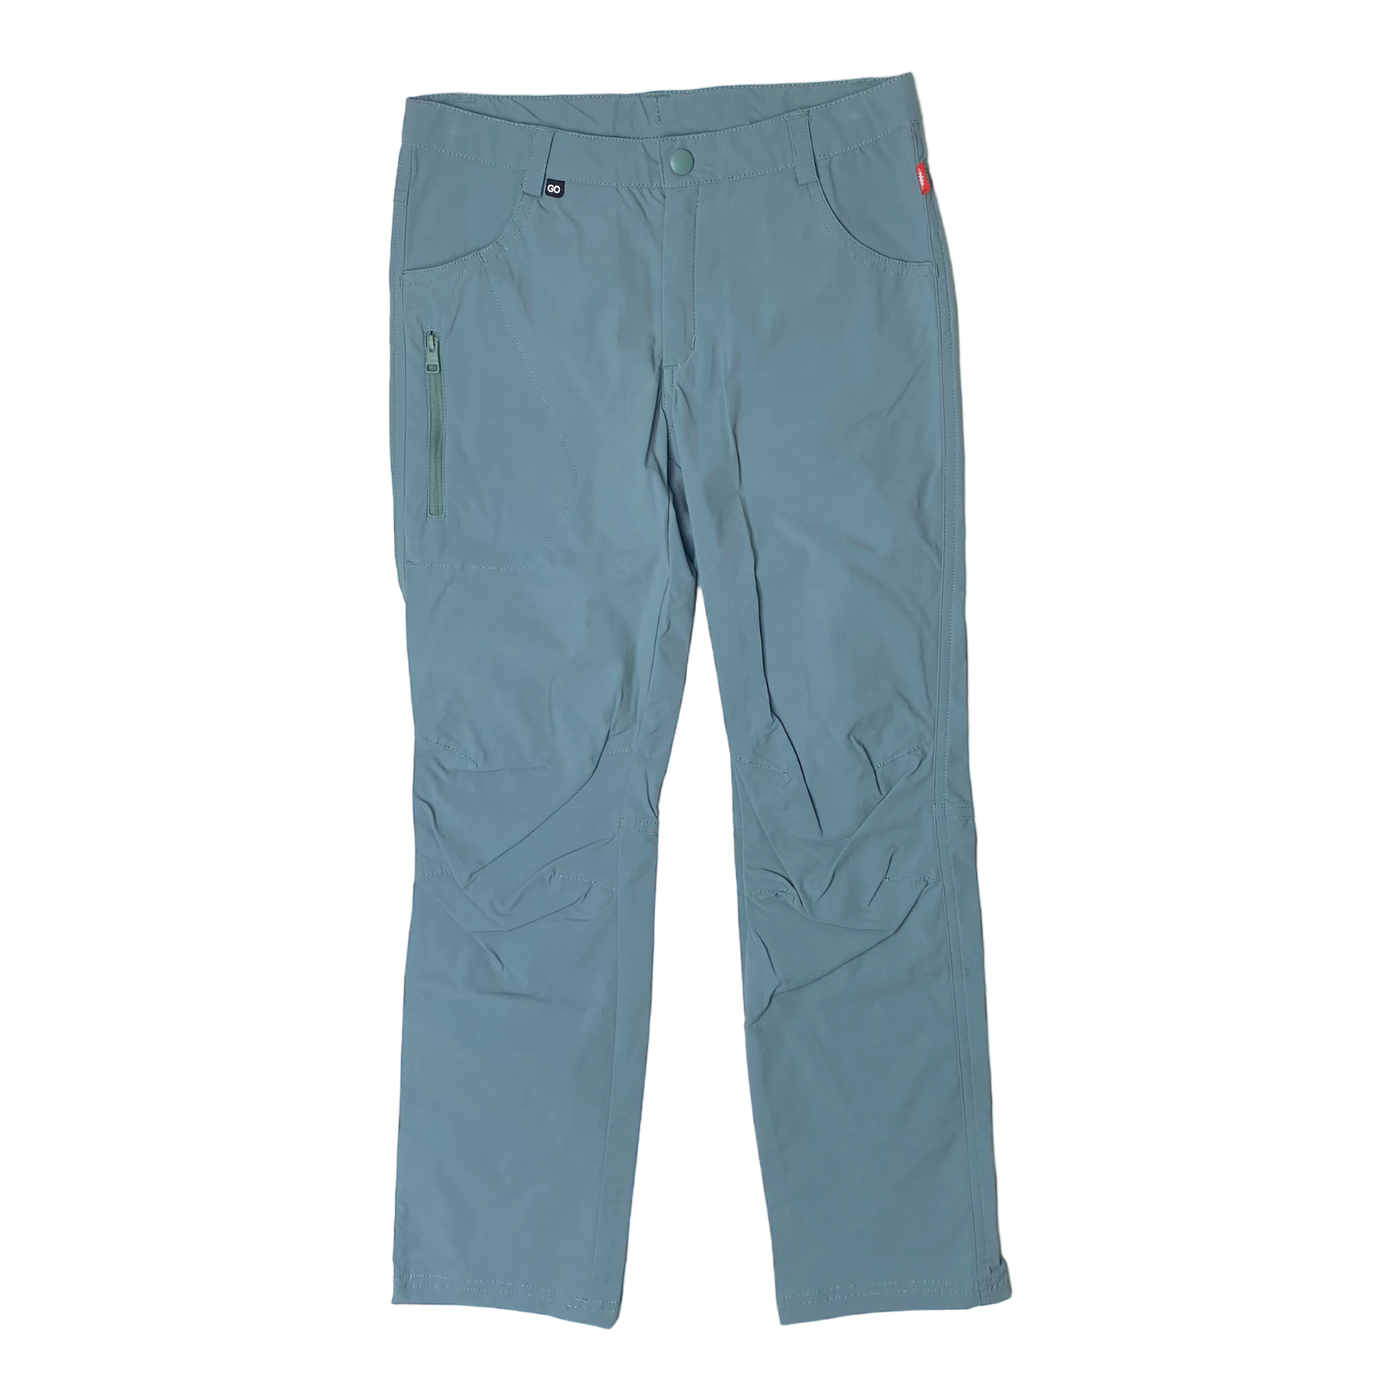 Reima reimago sway midseason pants, turquoise | 140cm